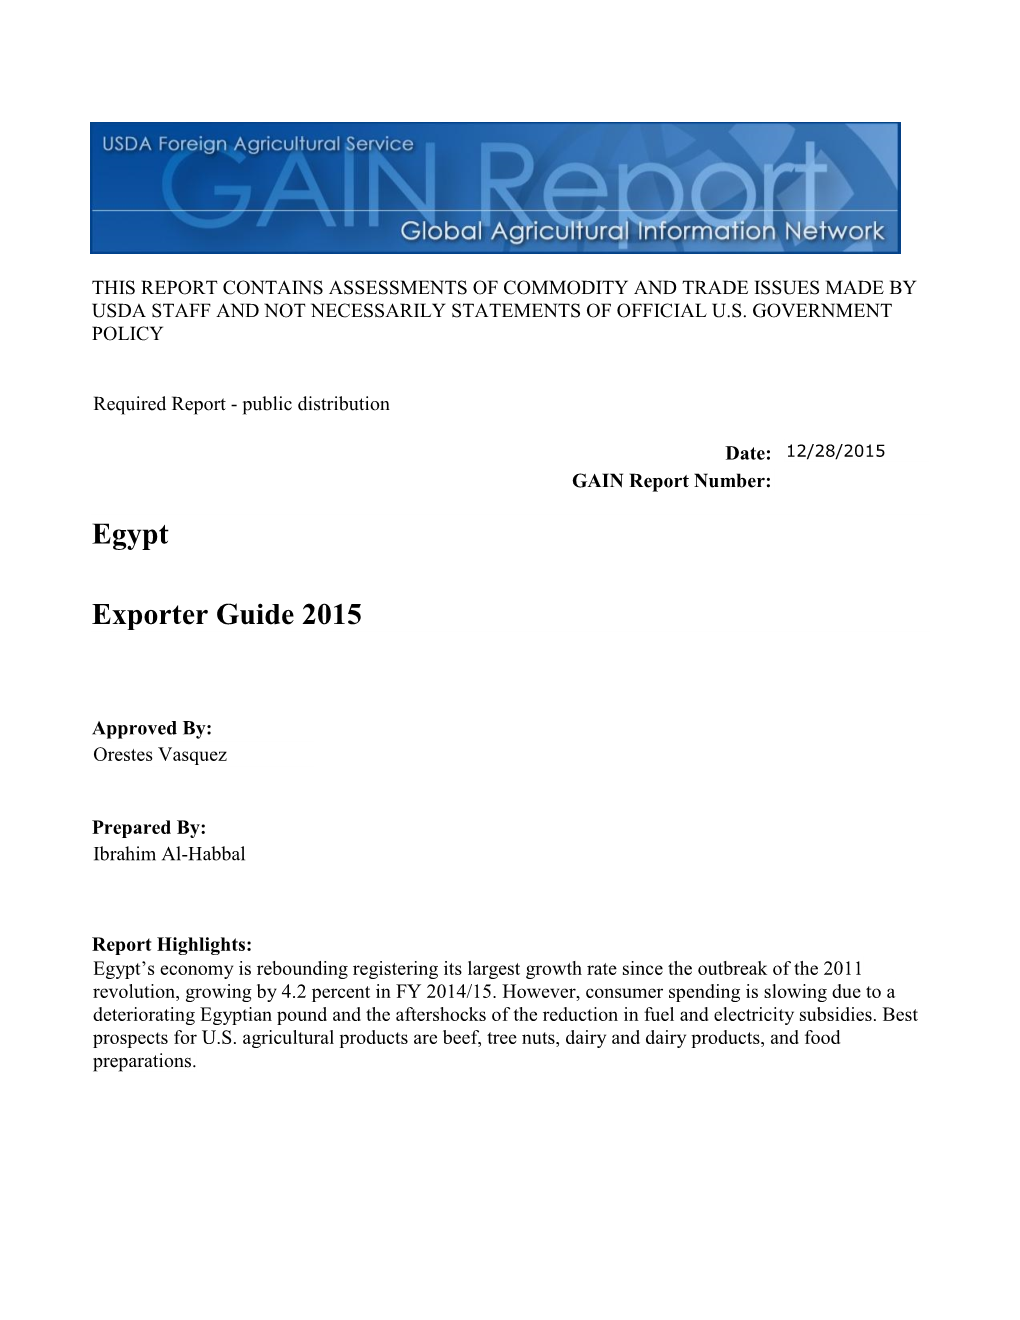 Exporter Guide 2015 Egypt